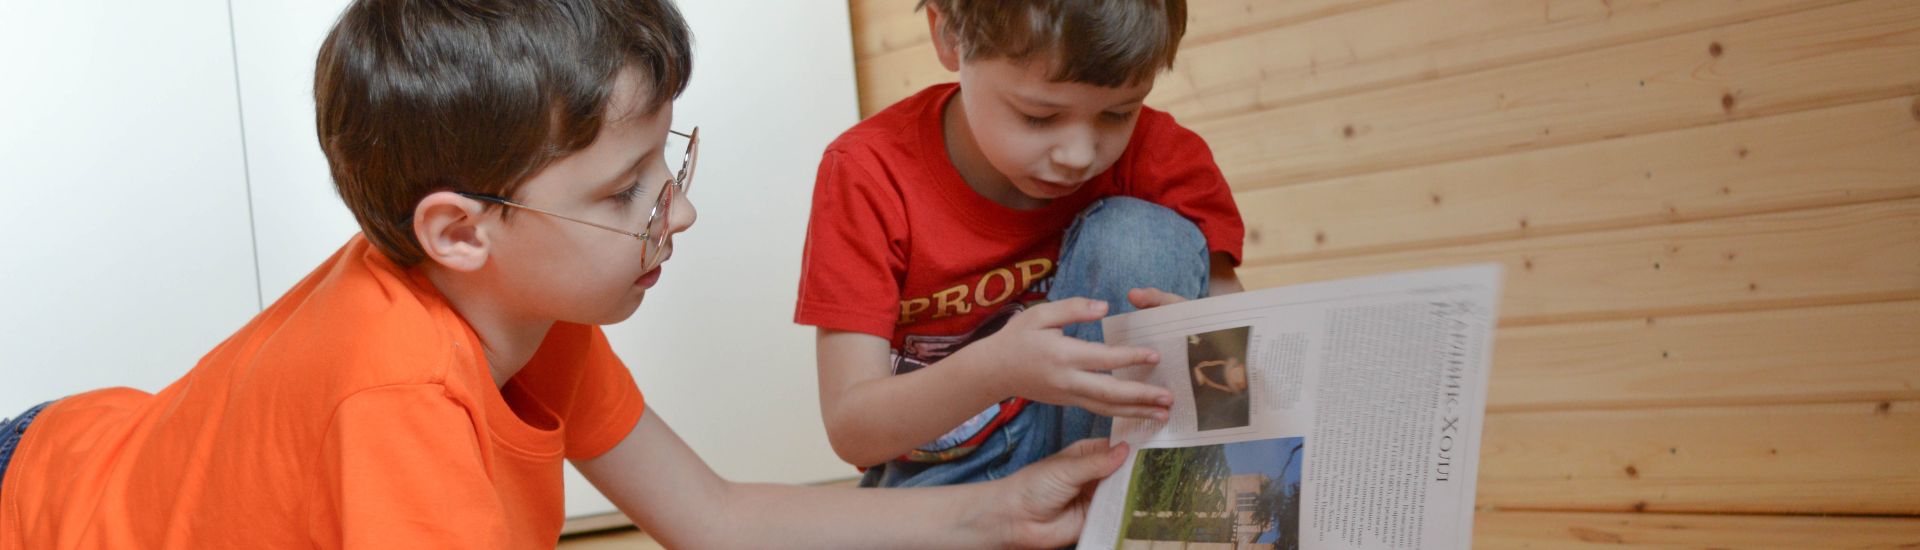 Dos niños leyendo una revista en su casa